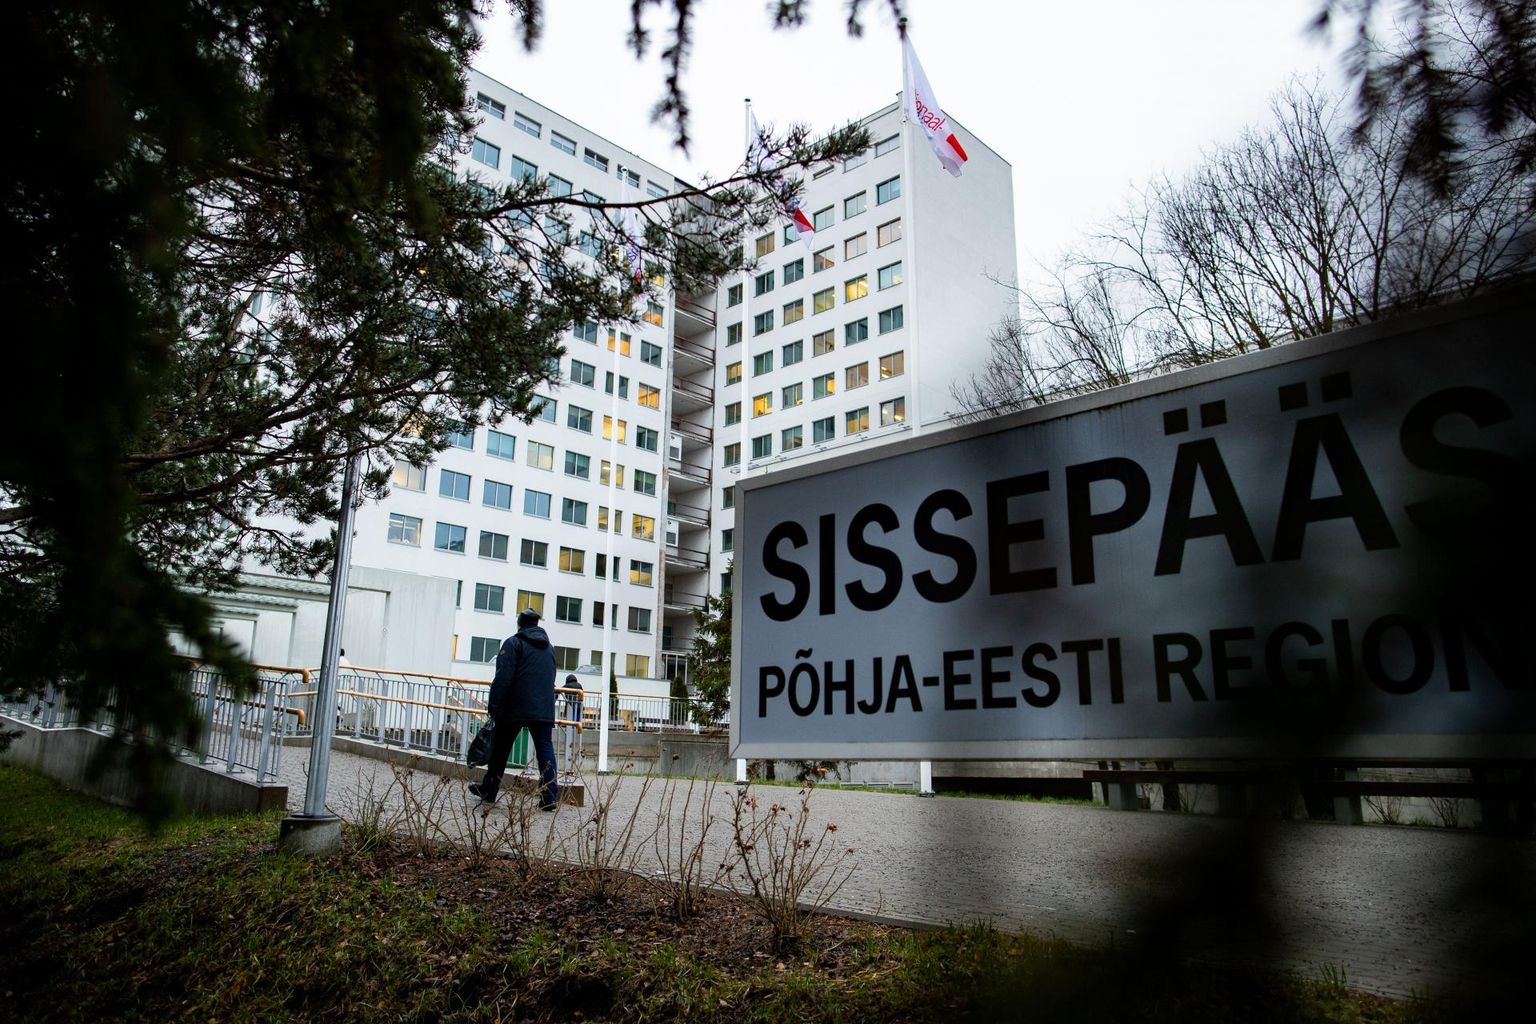 Põhja-Eesti Regionaalhaiglas oli mullu 27 ülikallist ravijuhtu, millele kulus ligikaudu 2,45 miljonit eurot. 